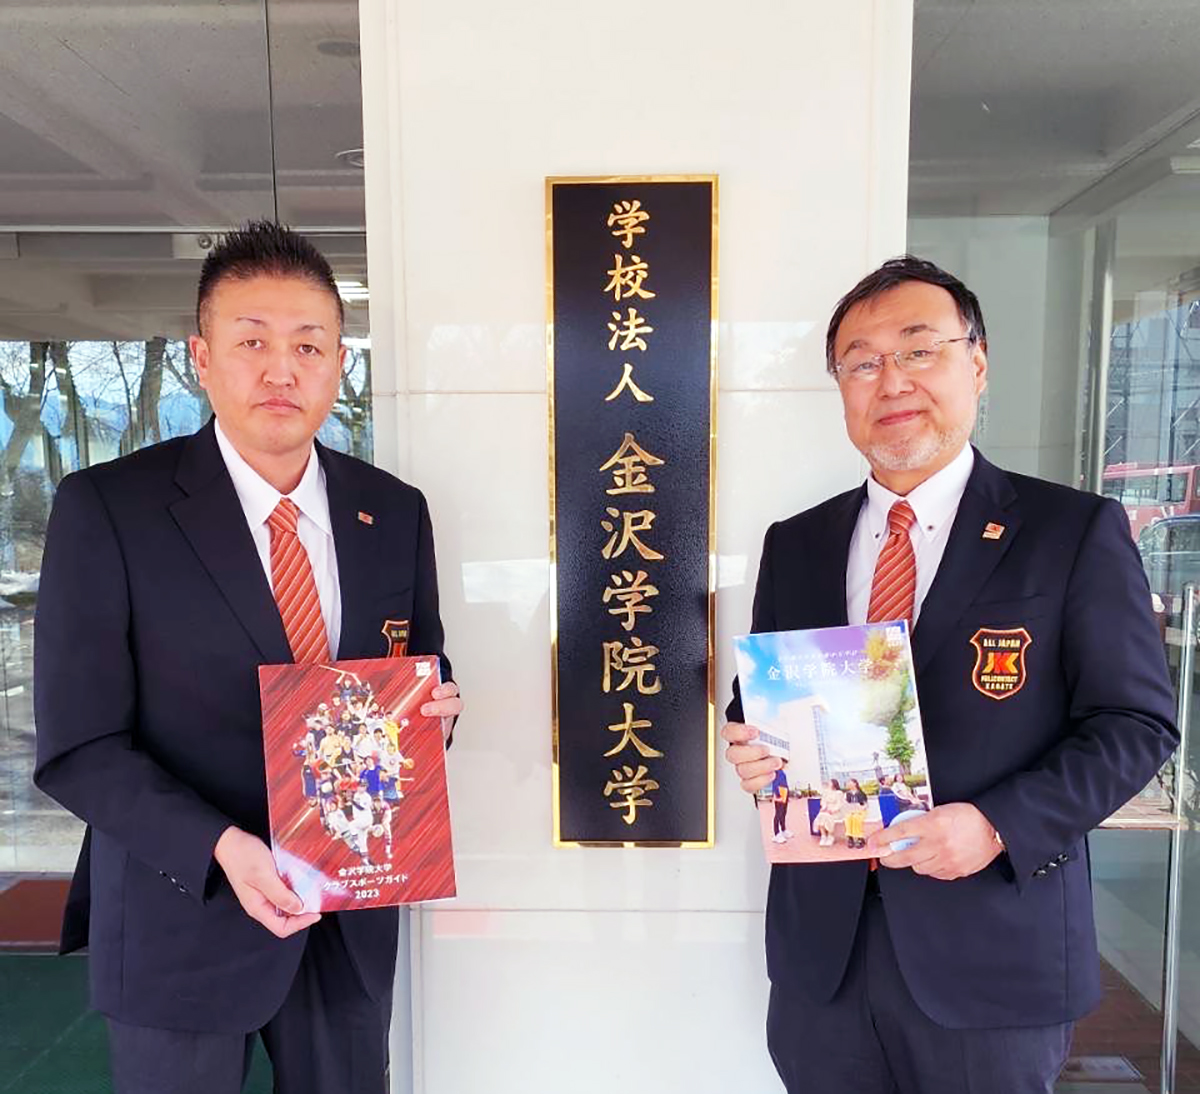 吉村理事、竹中先生が「金沢学院大学」を訪問